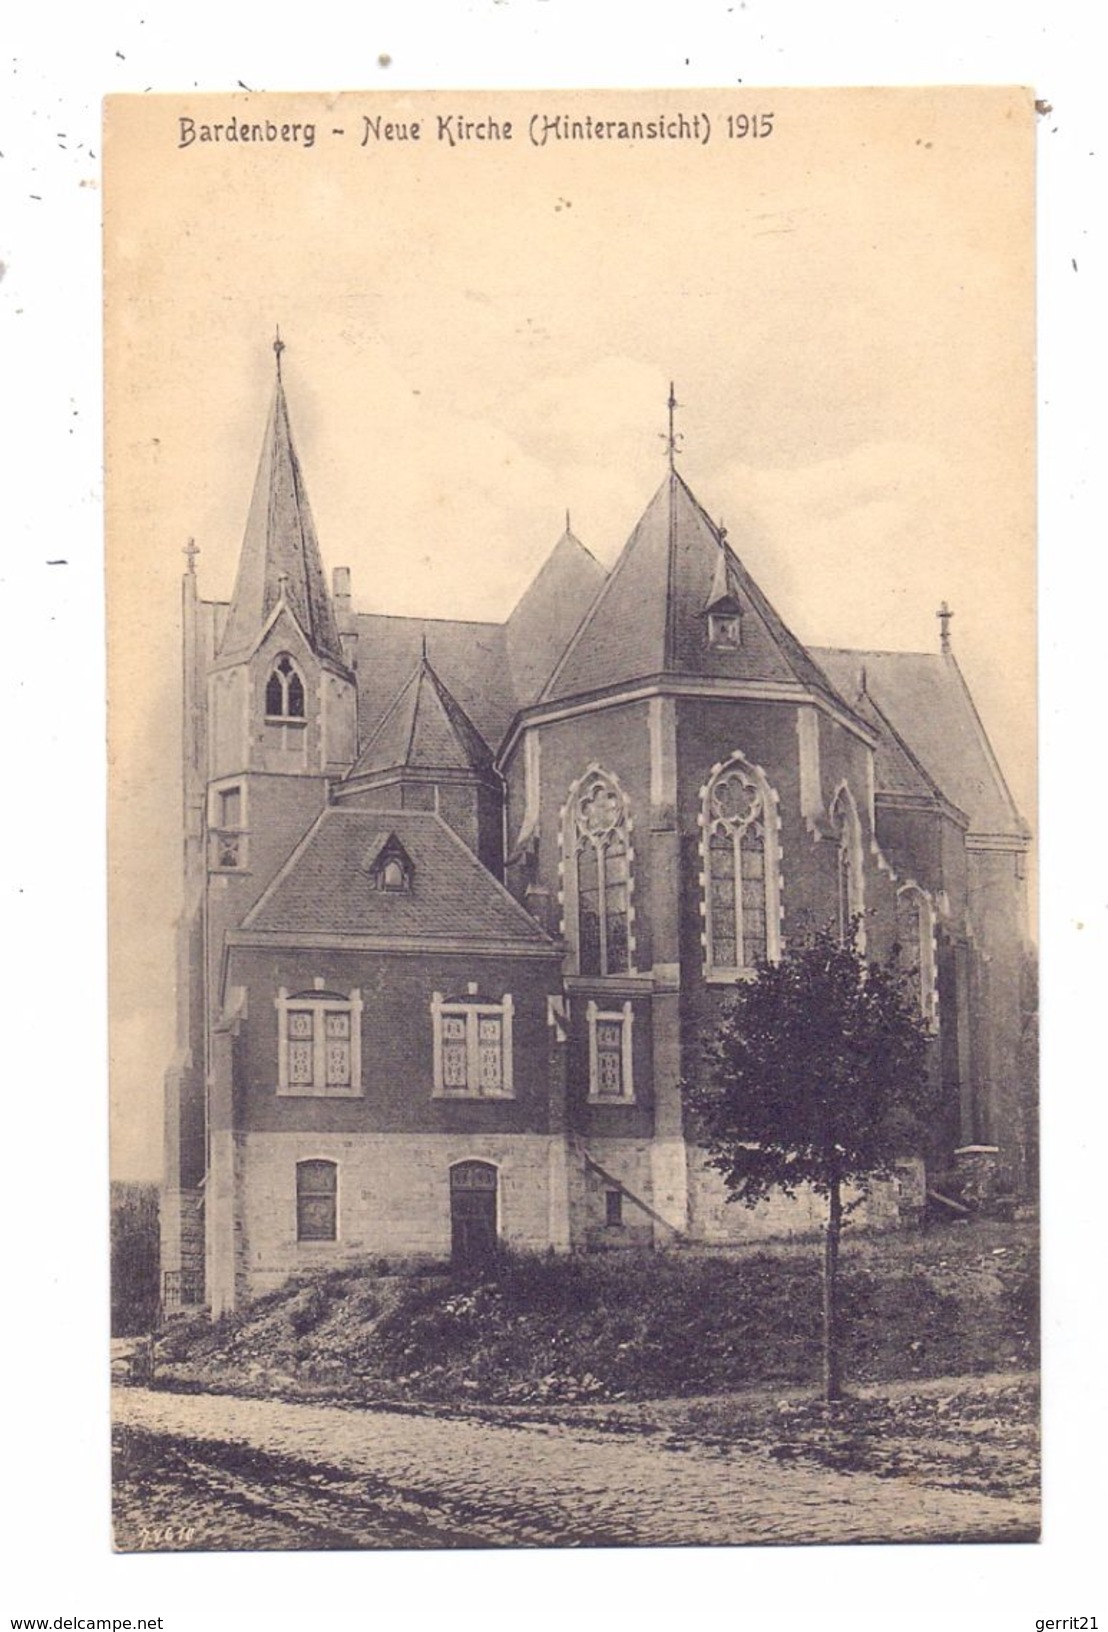 5102 WÜRSELEN - BARDENBERG, Neue Kirche, 1915 - Wuerselen